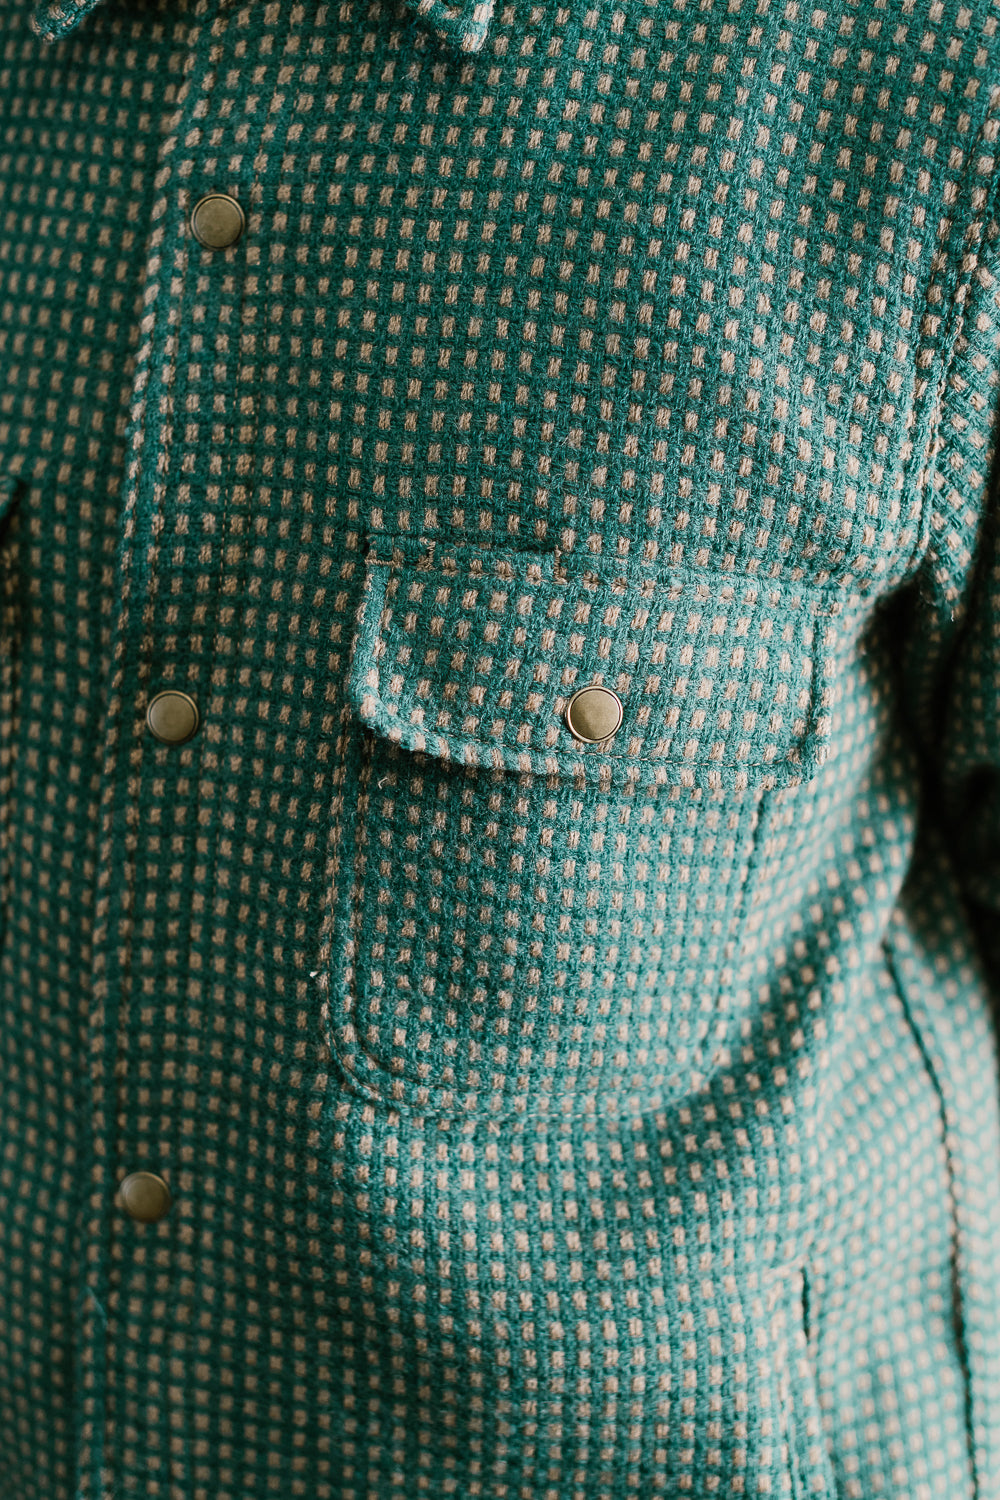 Field Shirt Lined Wool Dot - Green